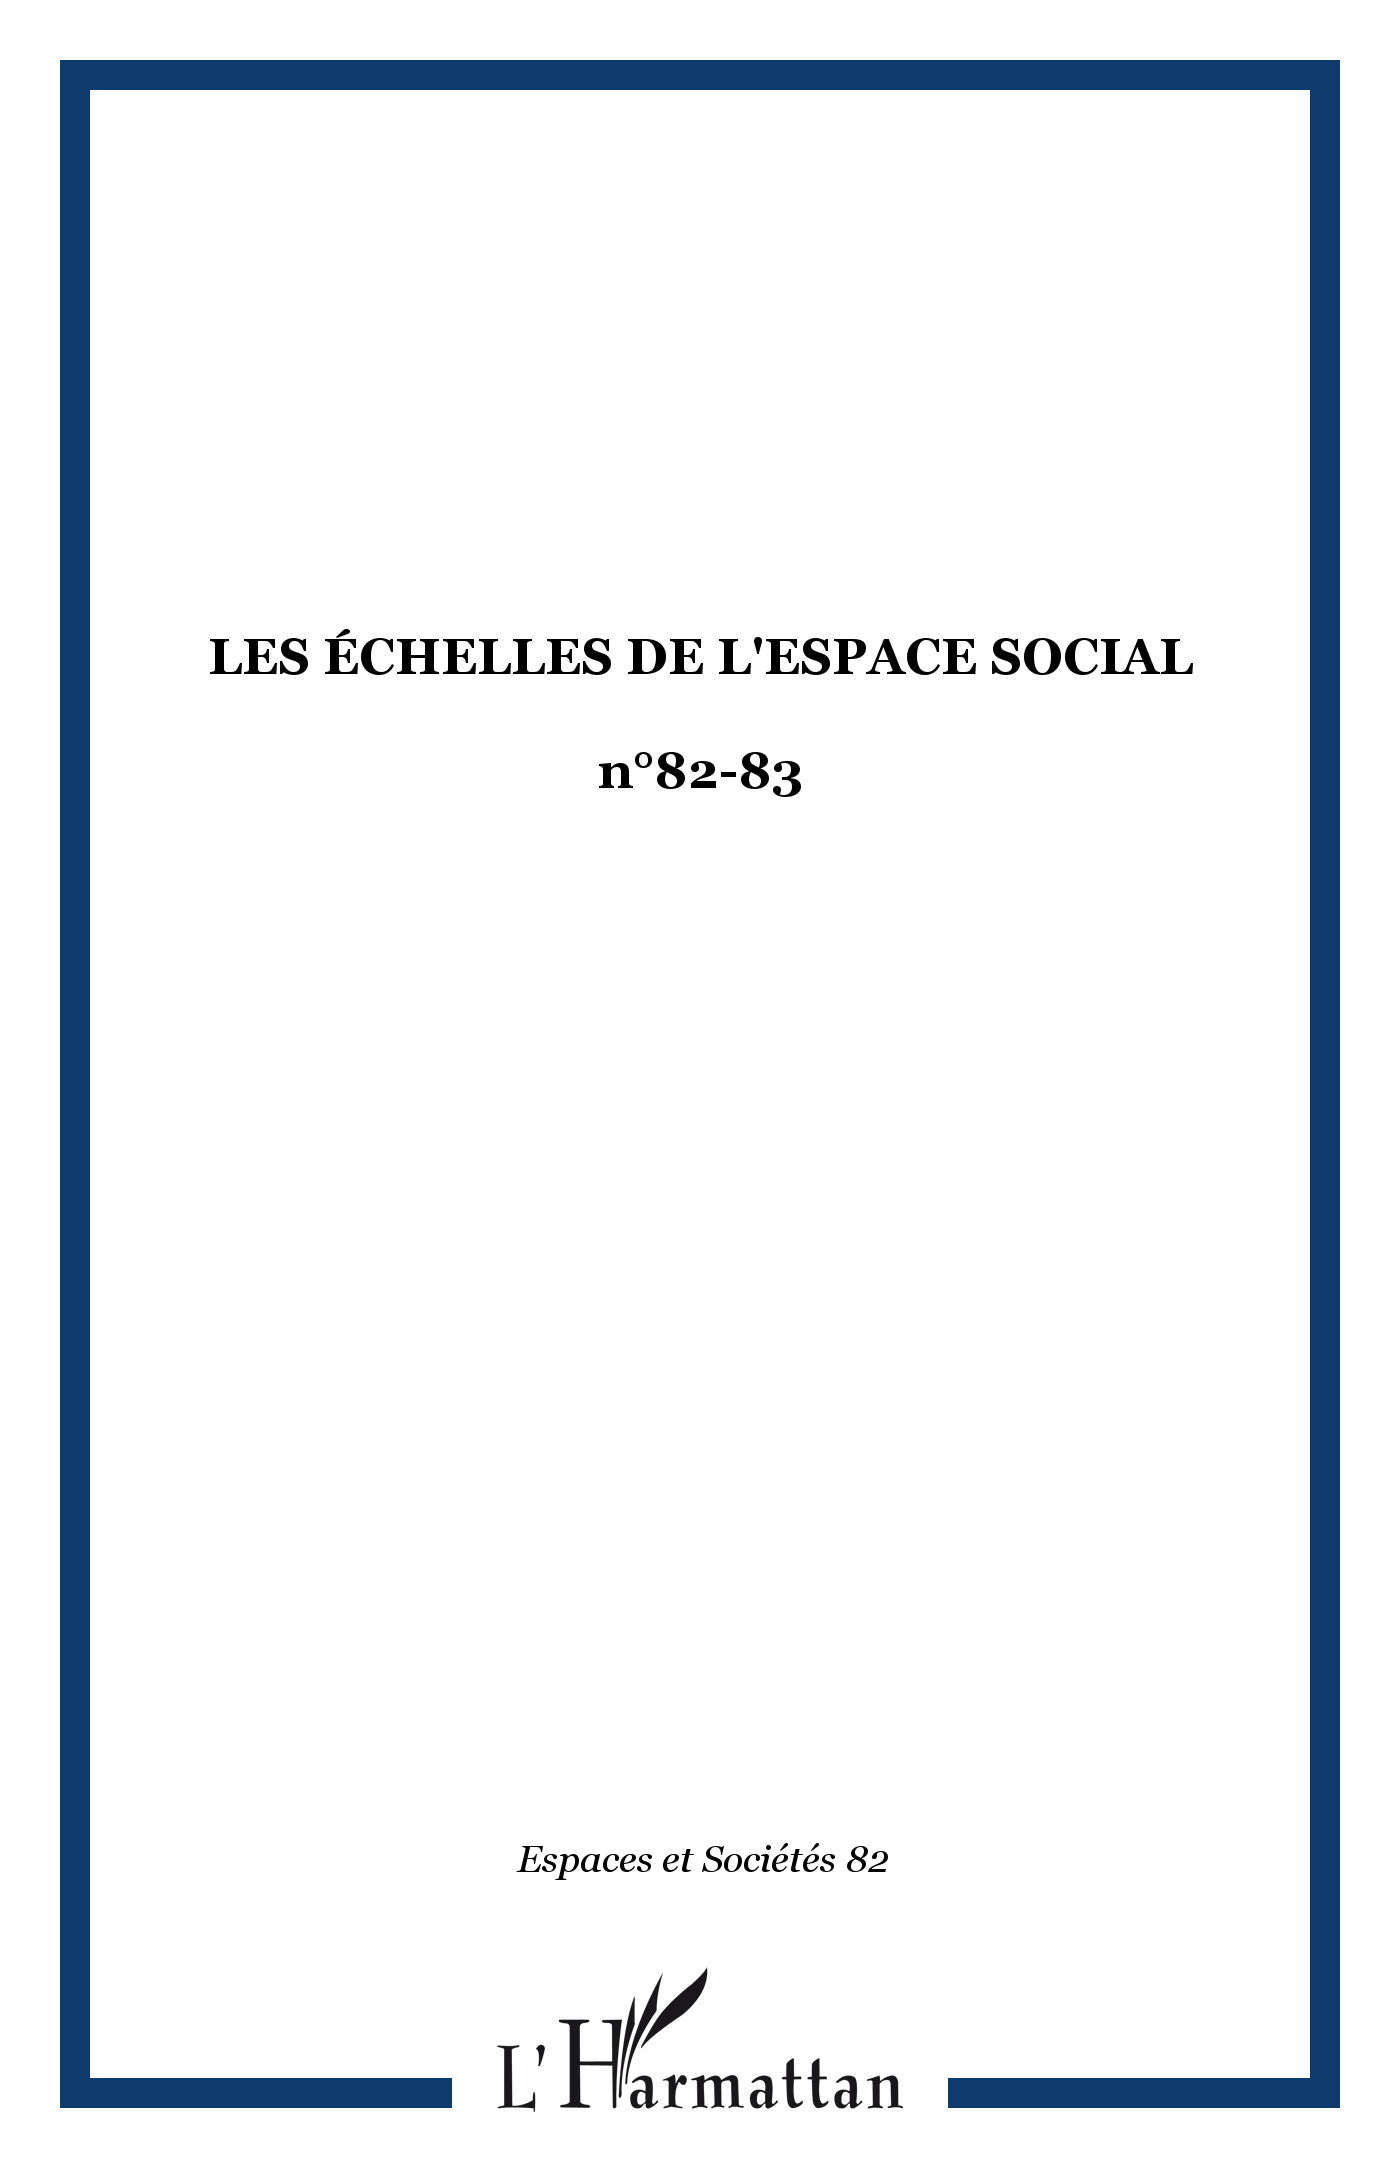 Espaces et Sociétés, Les échelles de l'espace social, n°82-83 (9782738434487-front-cover)